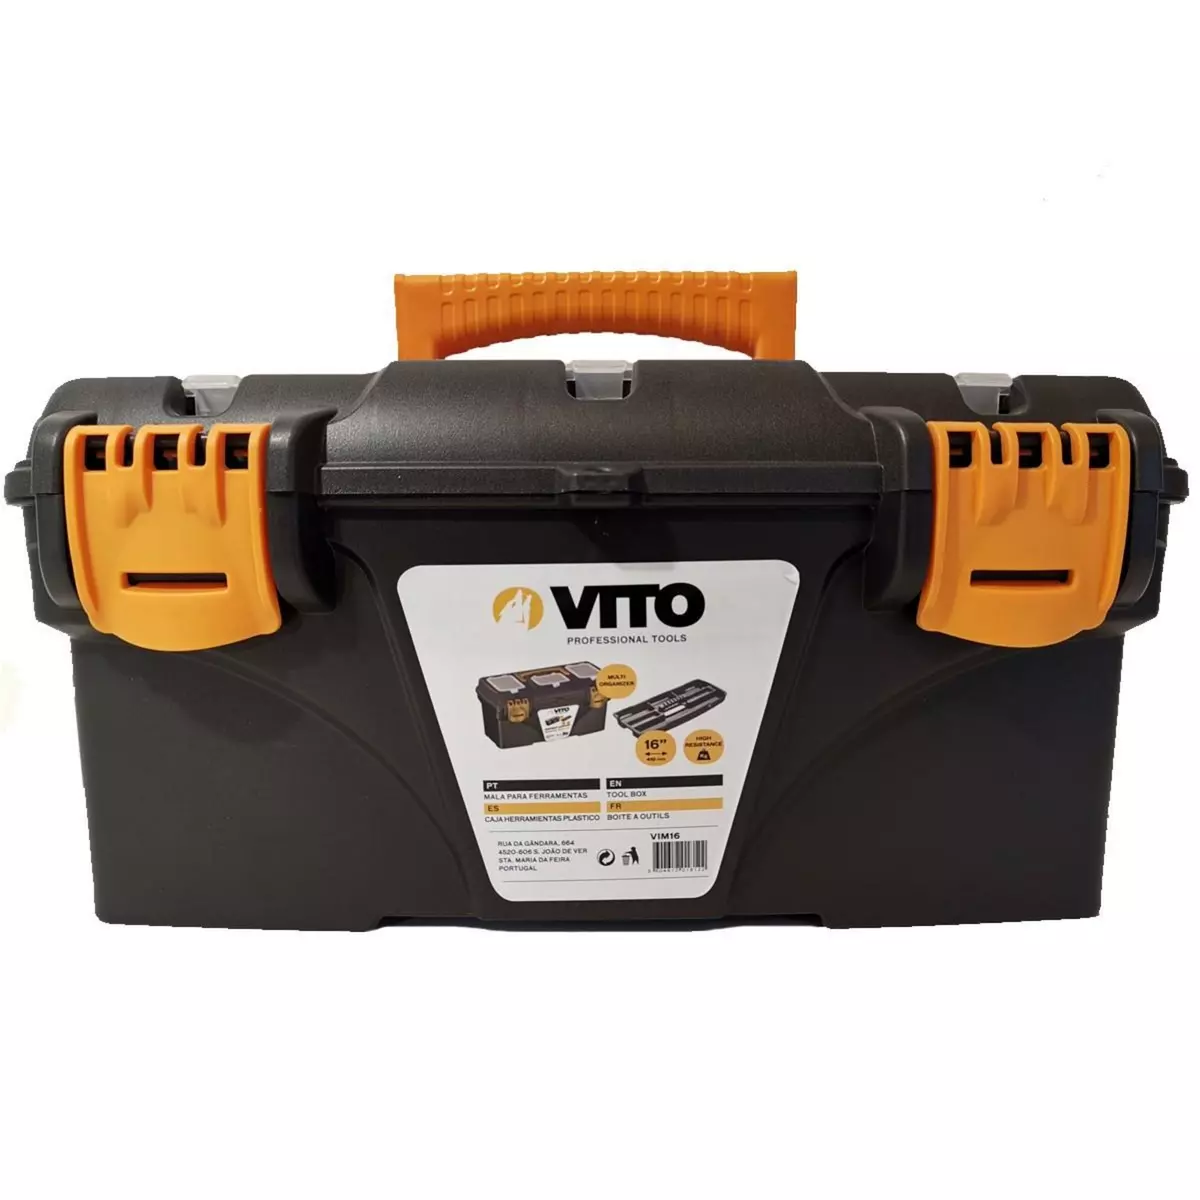 VITO Pro-Power Boite à outils 16  410 x 209 x 195 mm Caisse à outils multi-rangement haute résistance